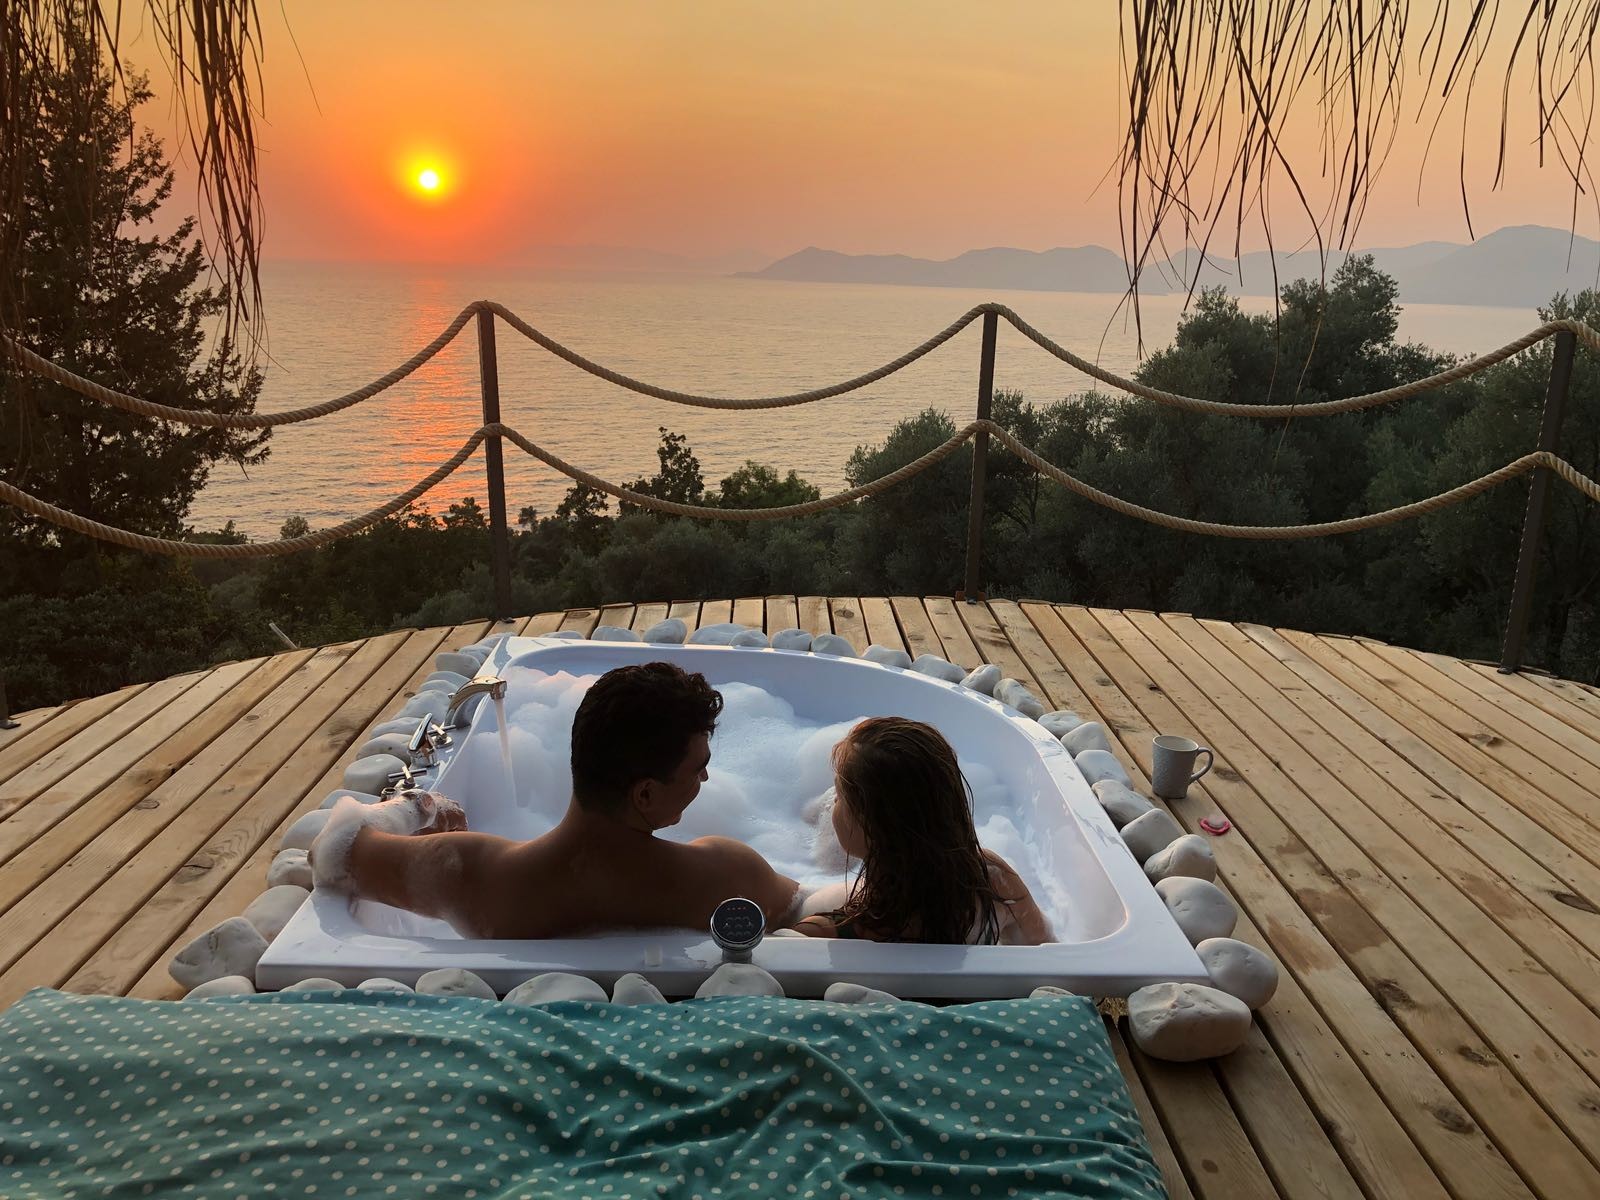 Немецкая пара отдыхая на курорте снимает свой секс на балконе